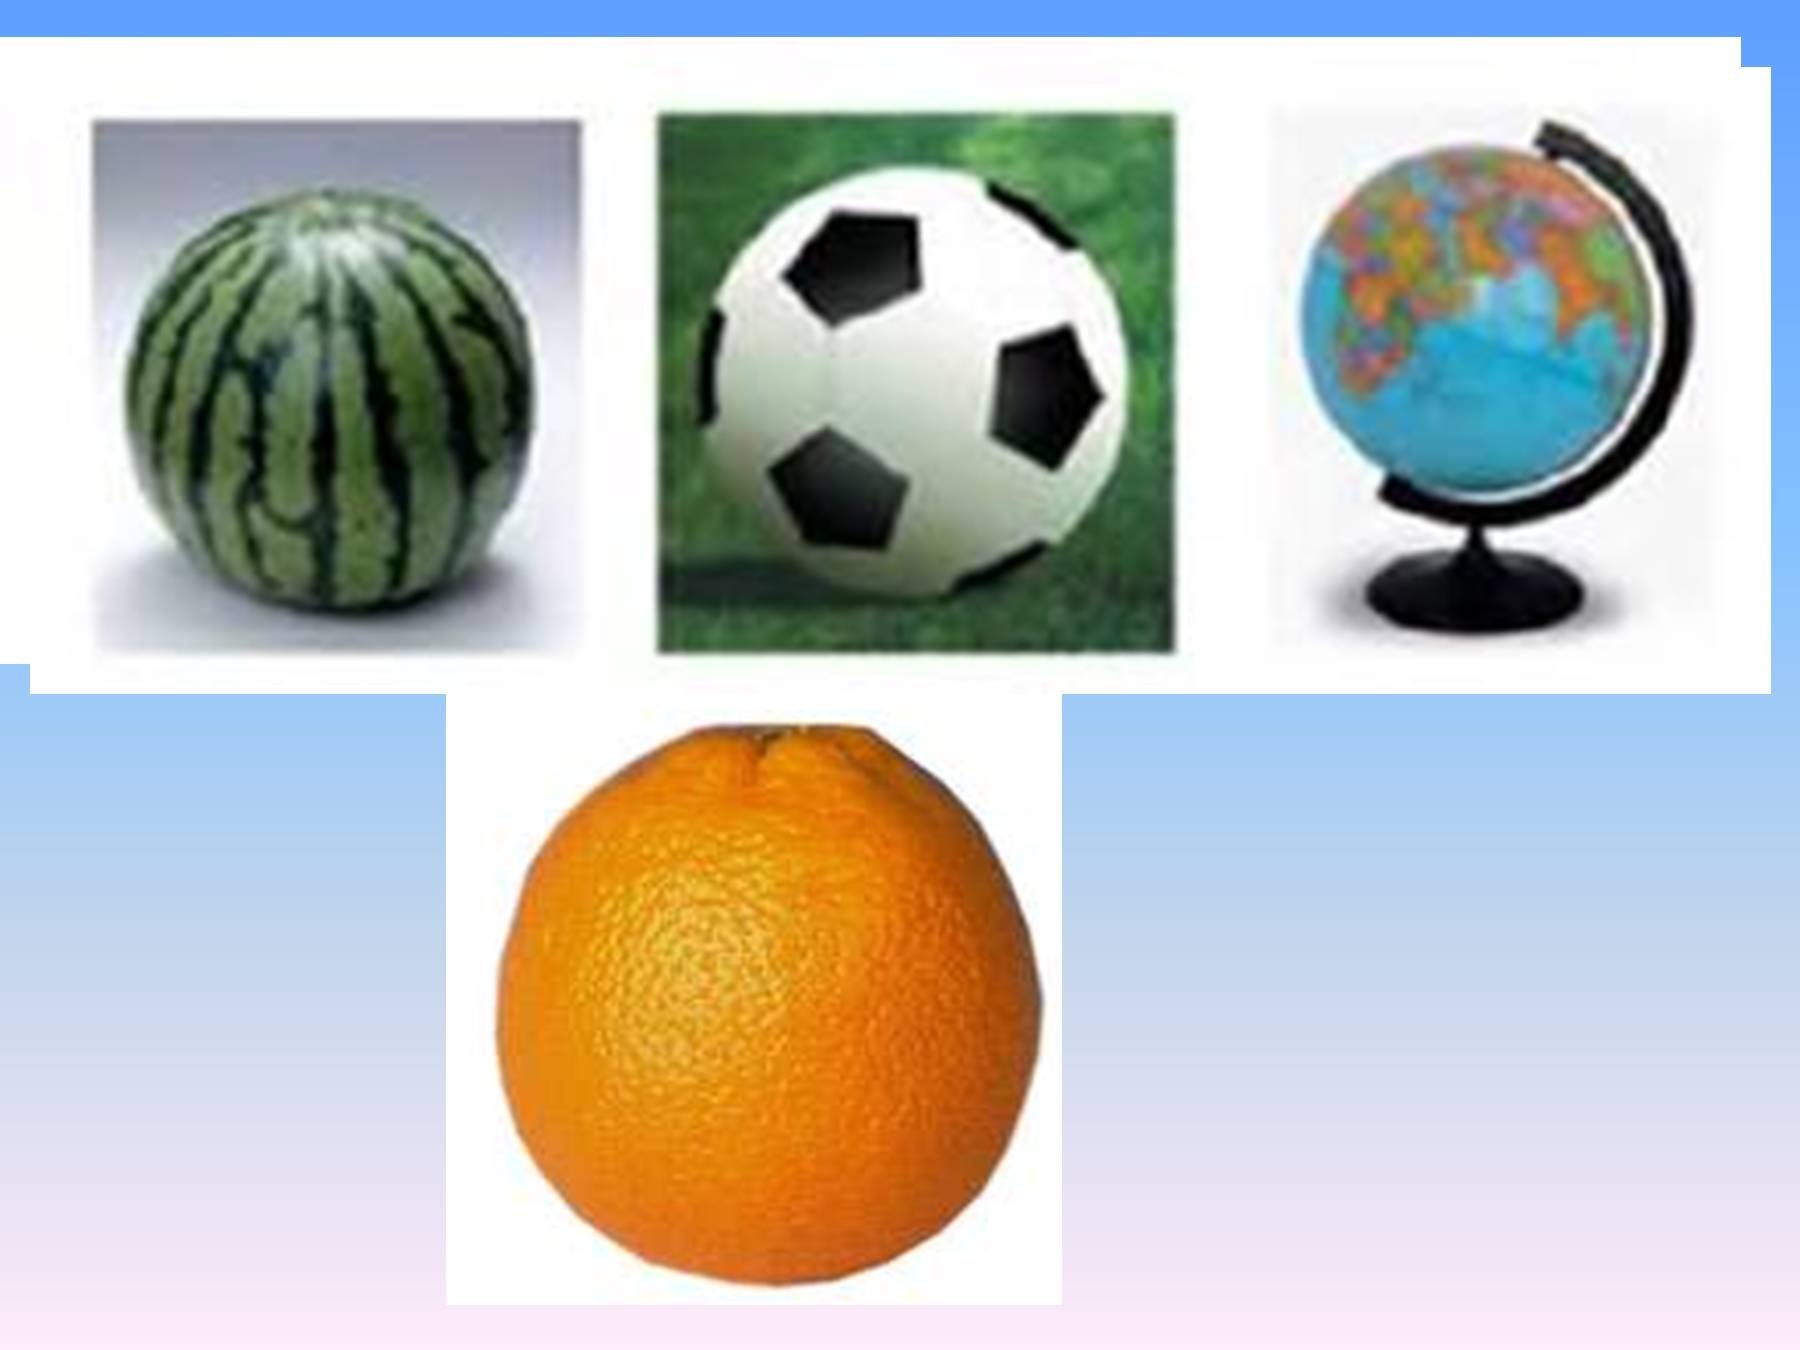 Правильная форма шара. Шарообразные предметы. Предметы похожие на шар. Предметы шарообразной формы. Предметы в форме шара.